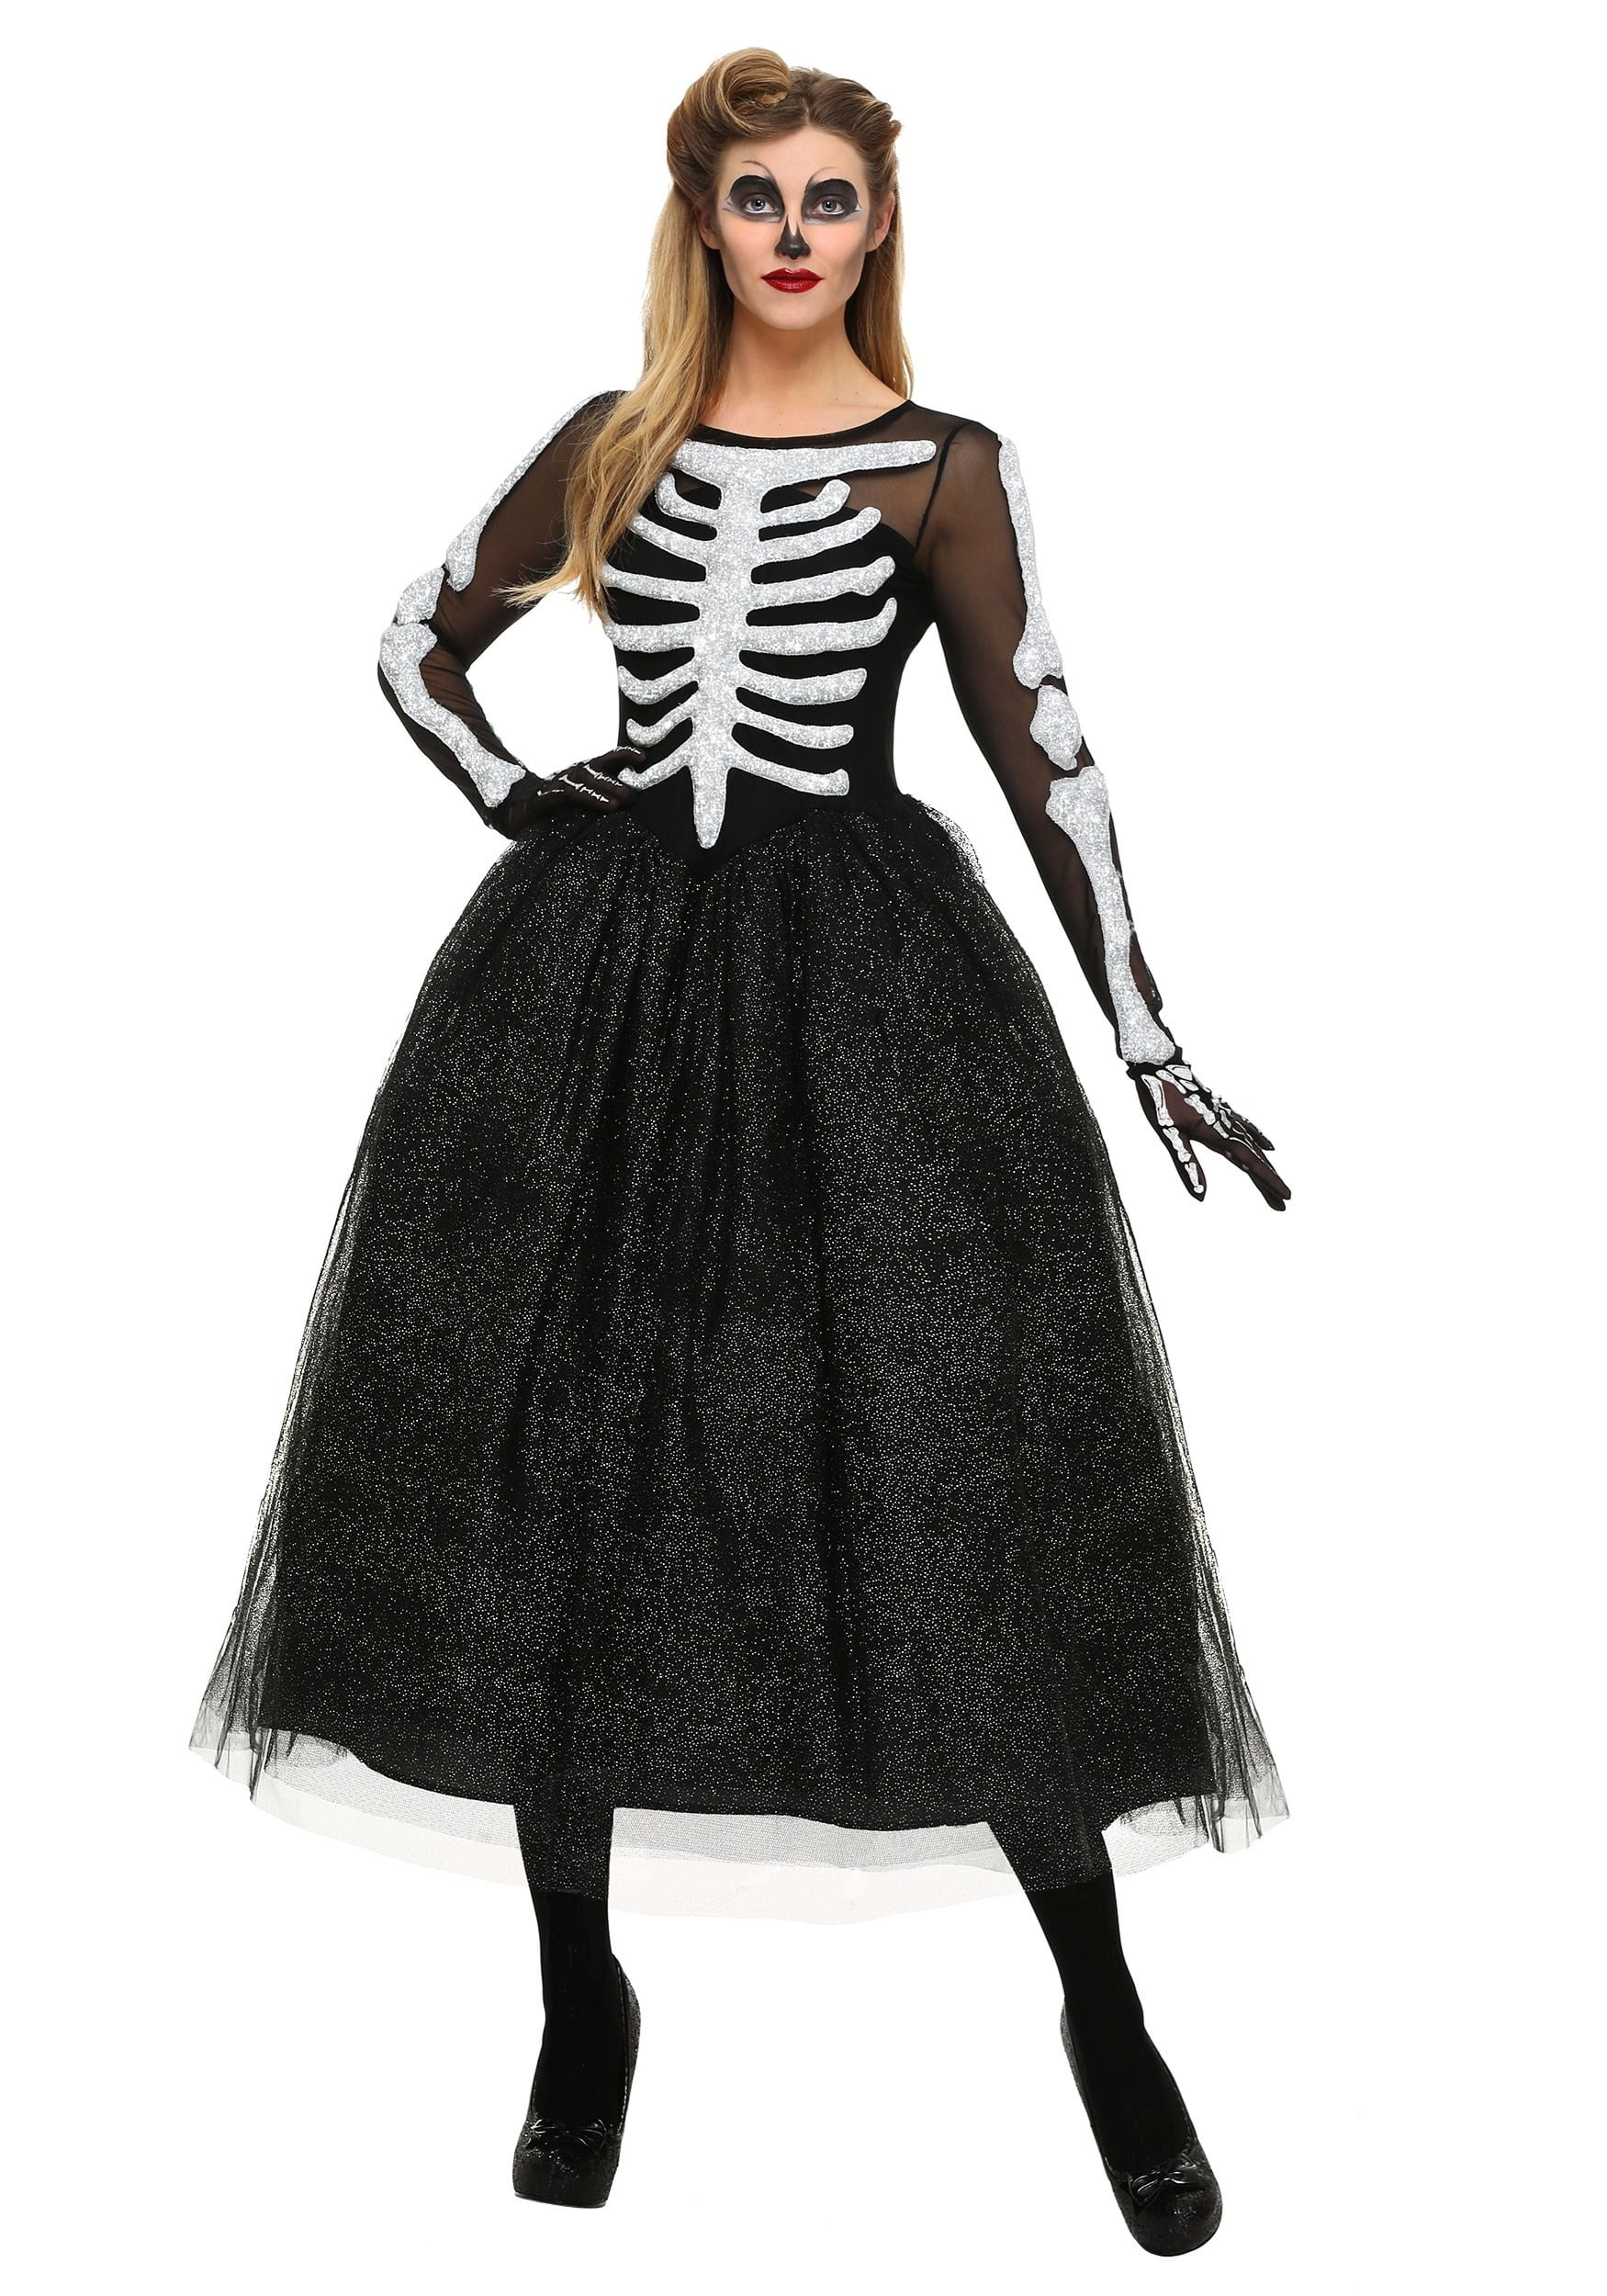 Misbruge Uden tvivl Følg os Women's Skeleton Beauty Plus Size Costume - Walmart.com